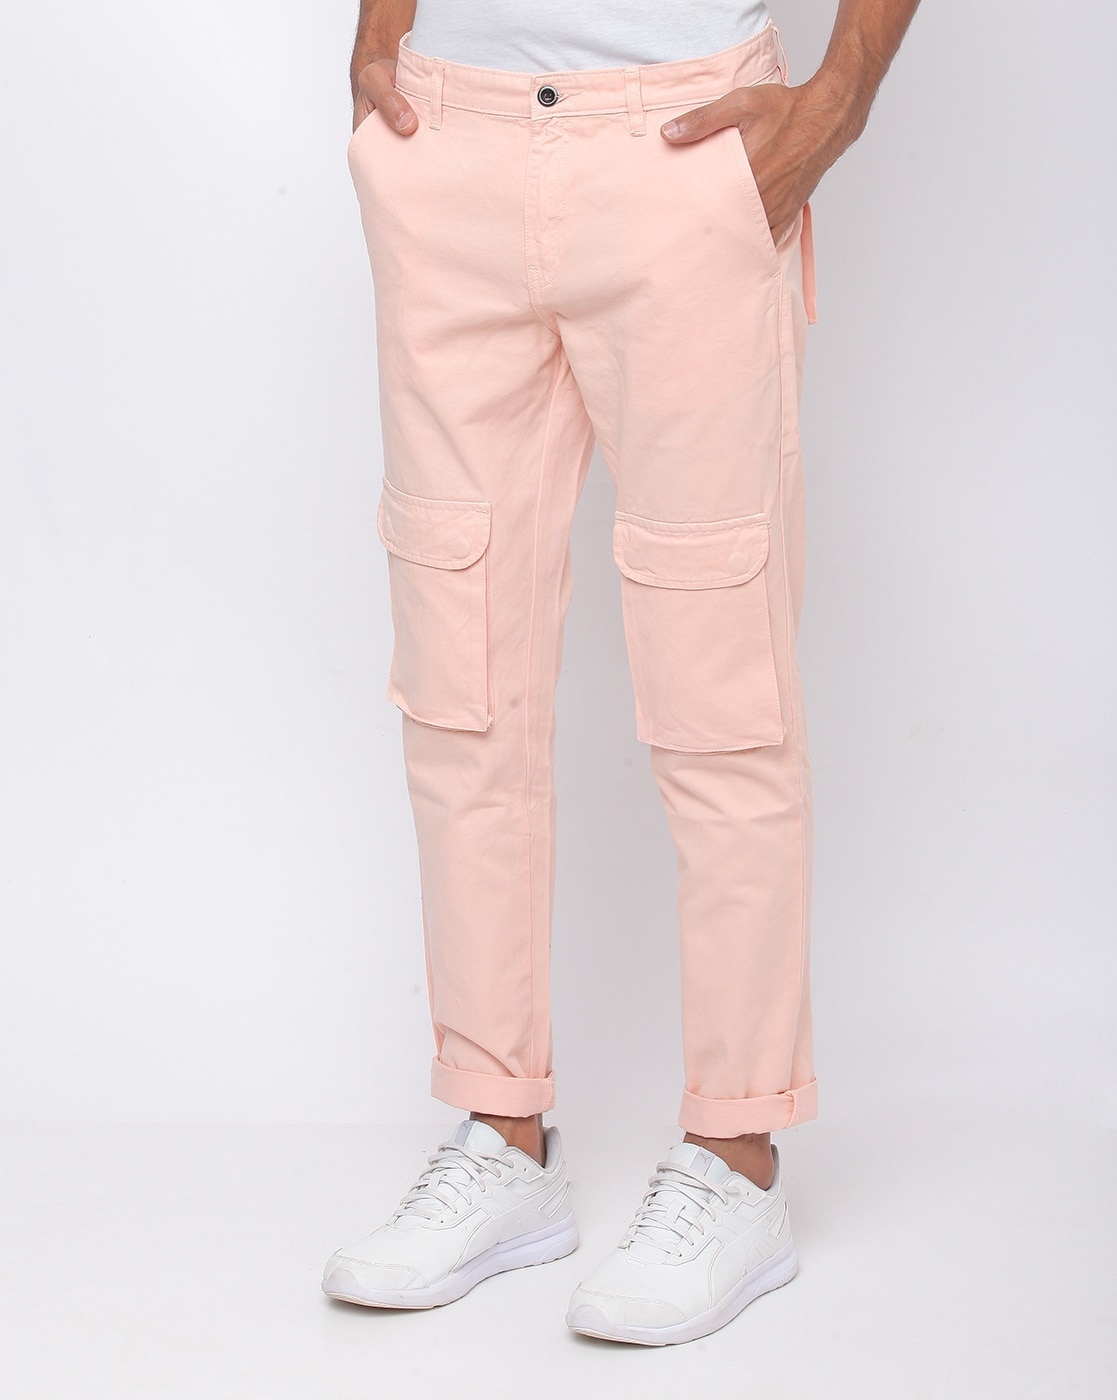 pink cargo pants men｜TikTok Search